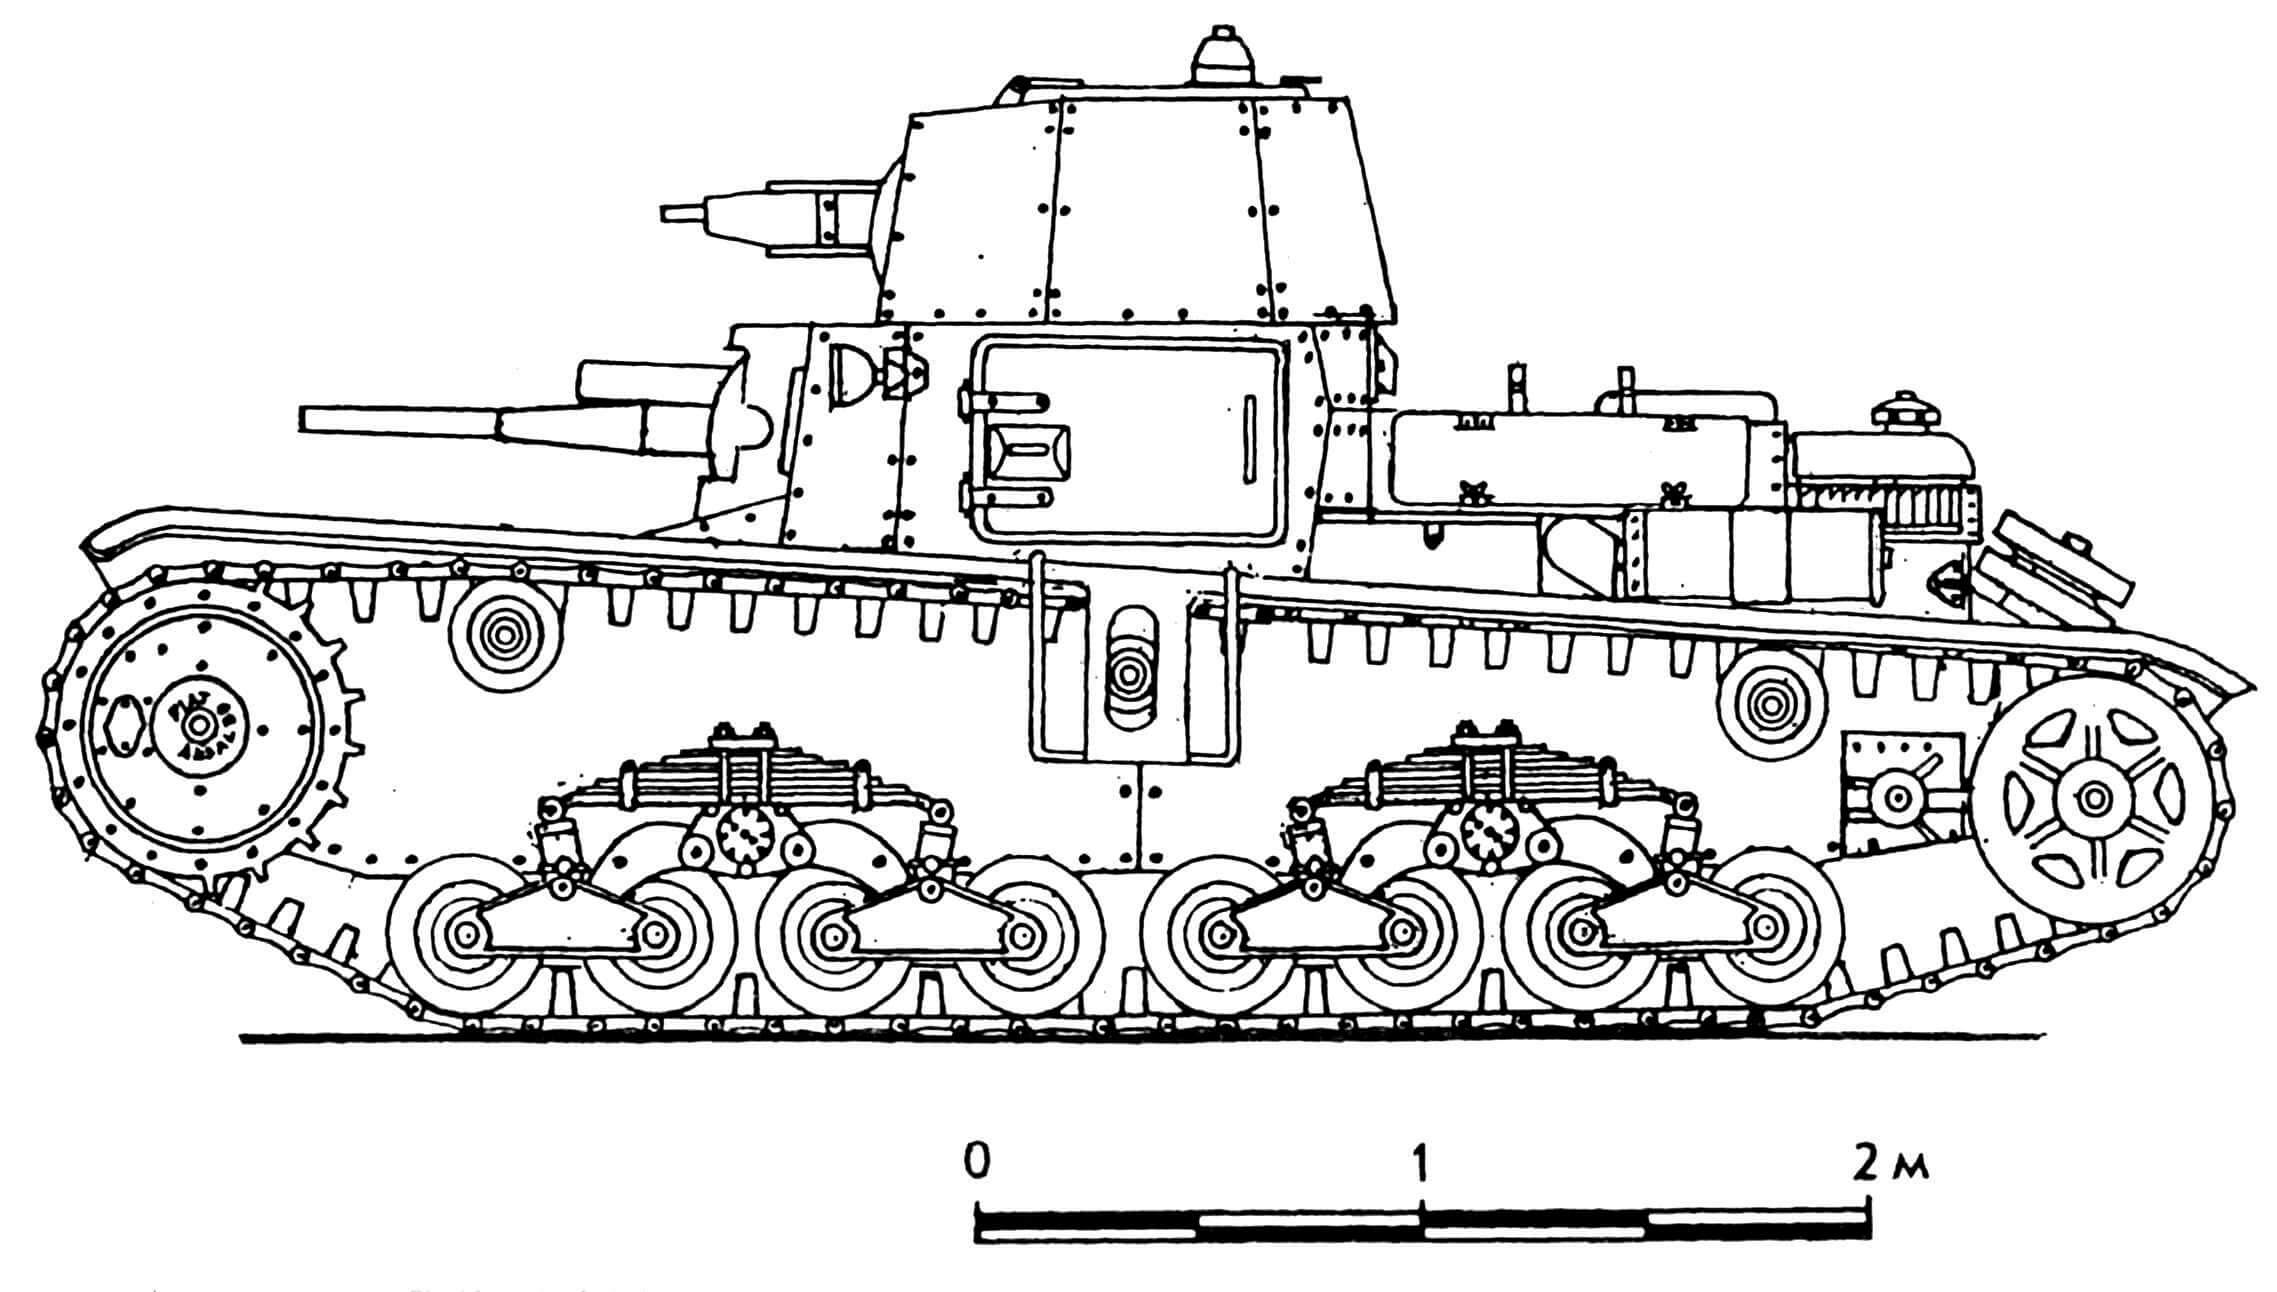 Carro Armato M11/39